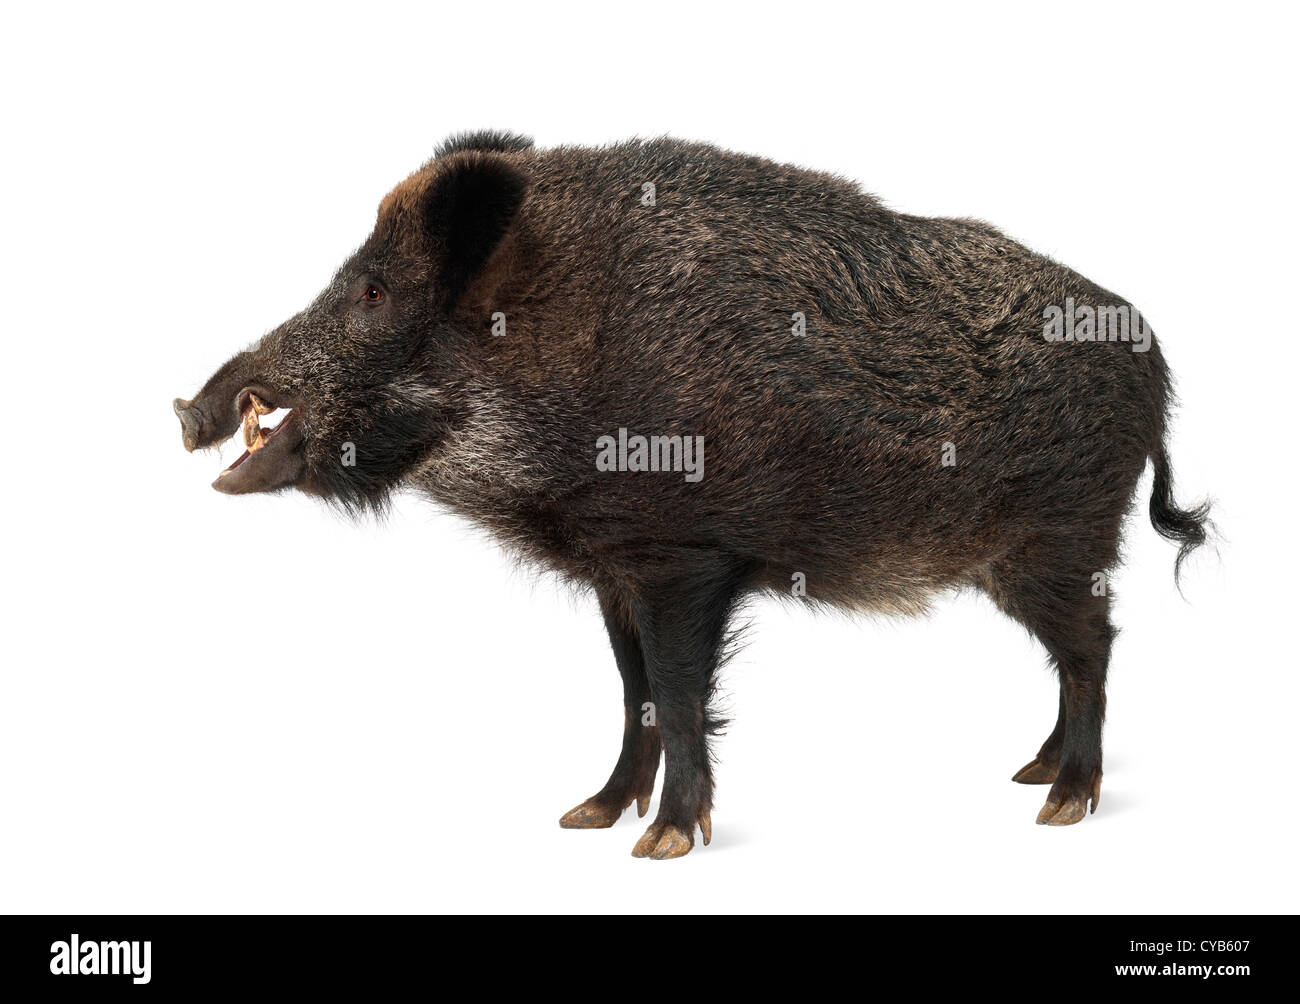 El jabalí, cerdo salvaje, Sus scrofa, de 15 años, estando en contra de fondo blanco. Foto de stock